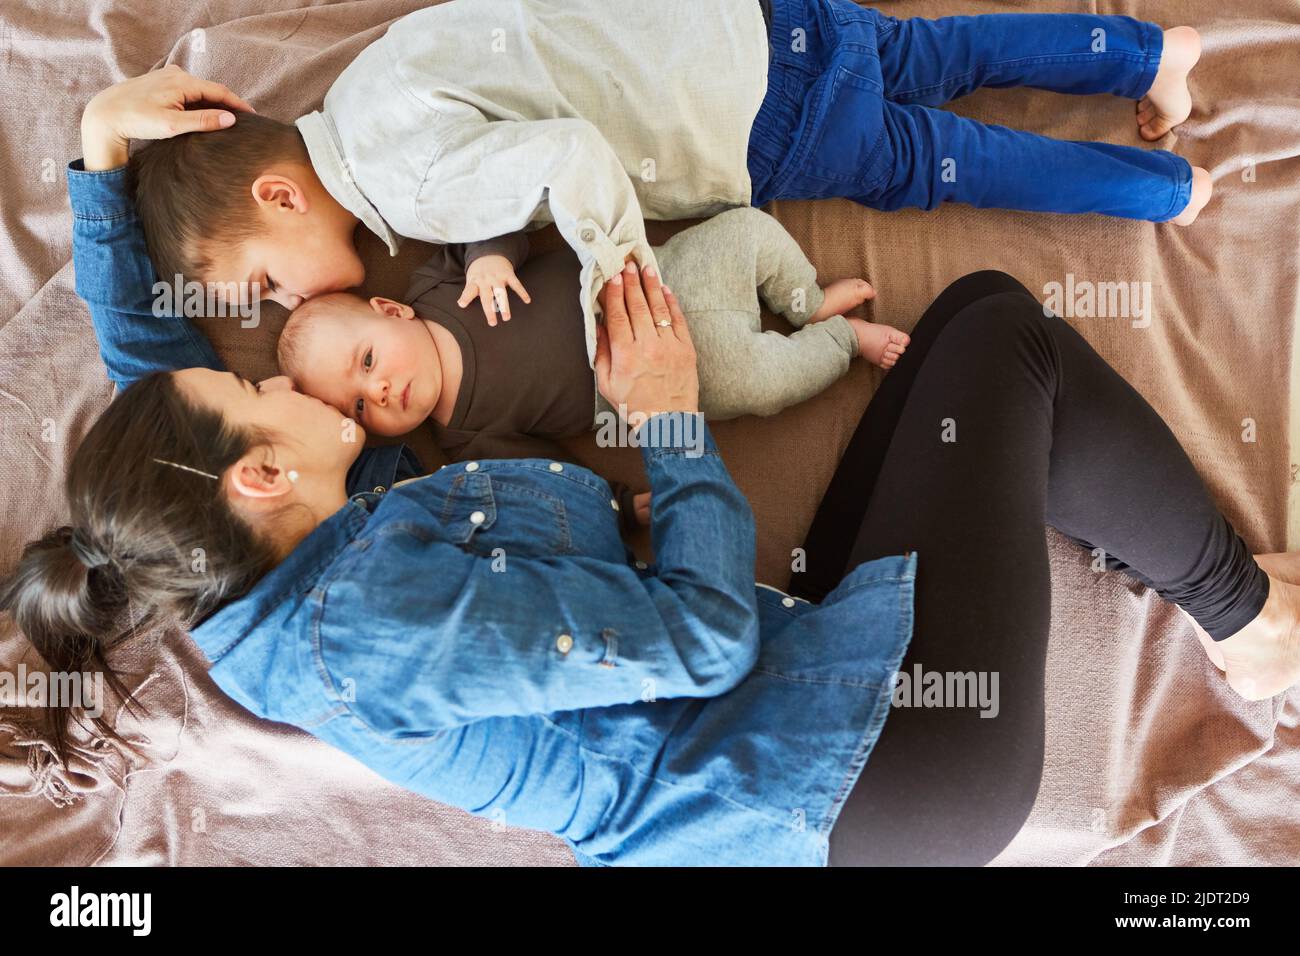 Bébé reçoit un baiser de la mère et du frère tout en se câlinant sur une couverture dans le salon Banque D'Images